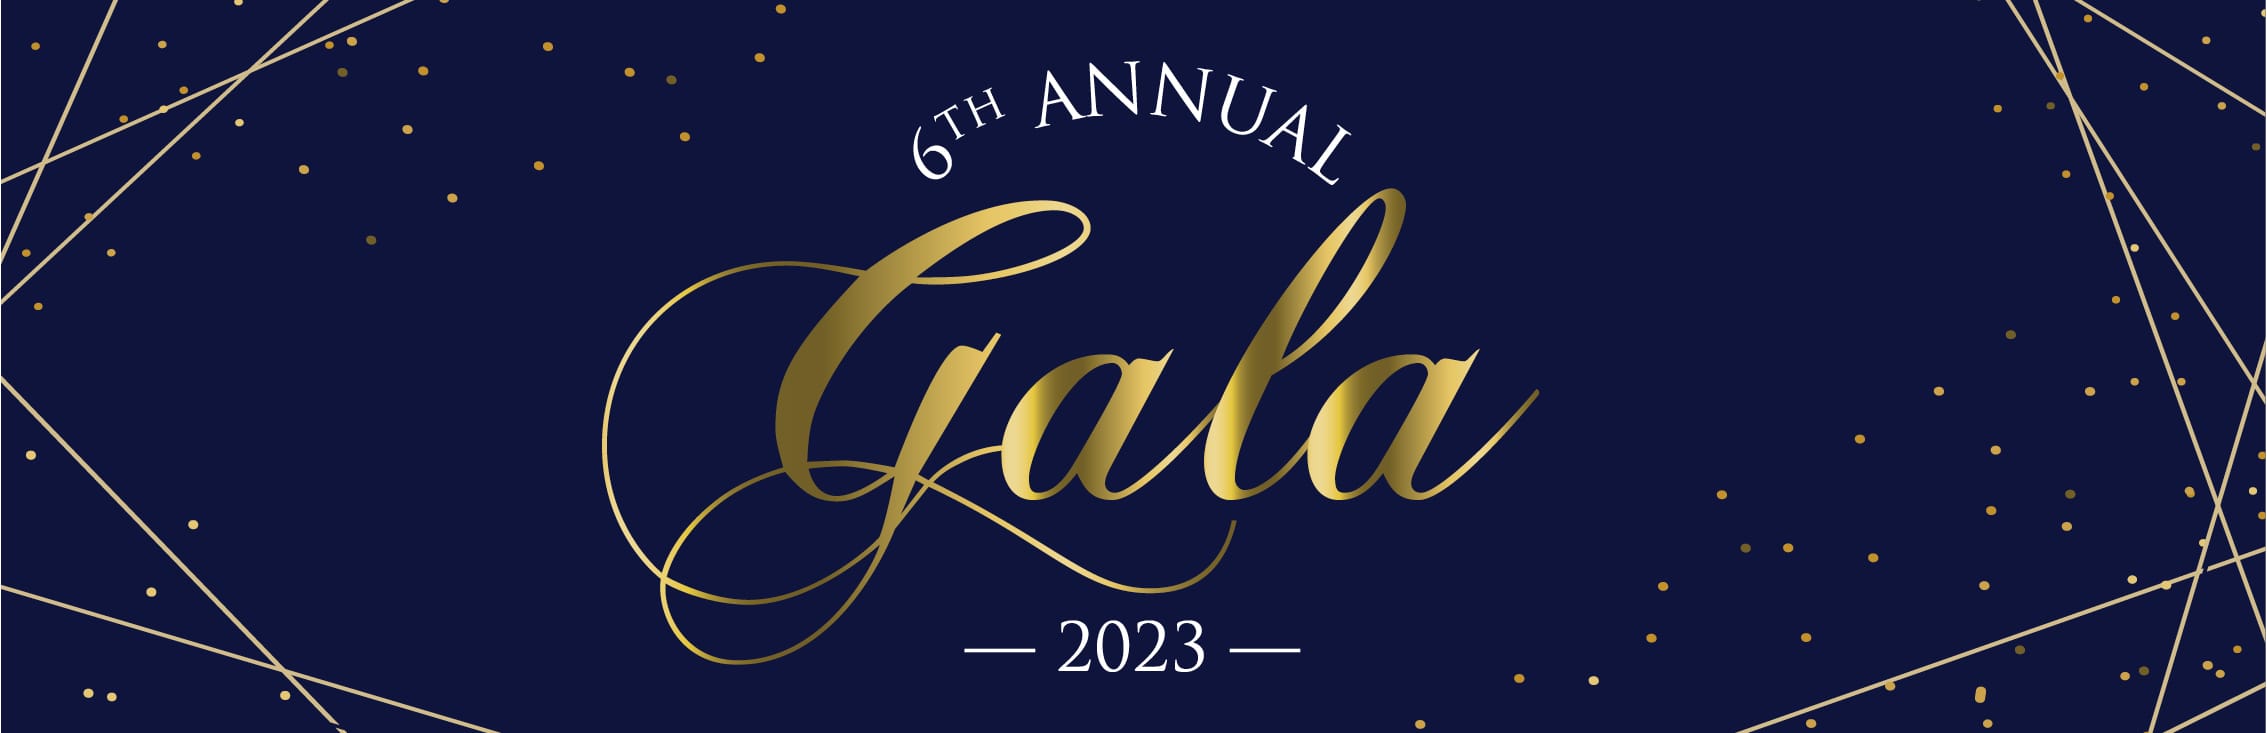 6th Annual Gala 2023